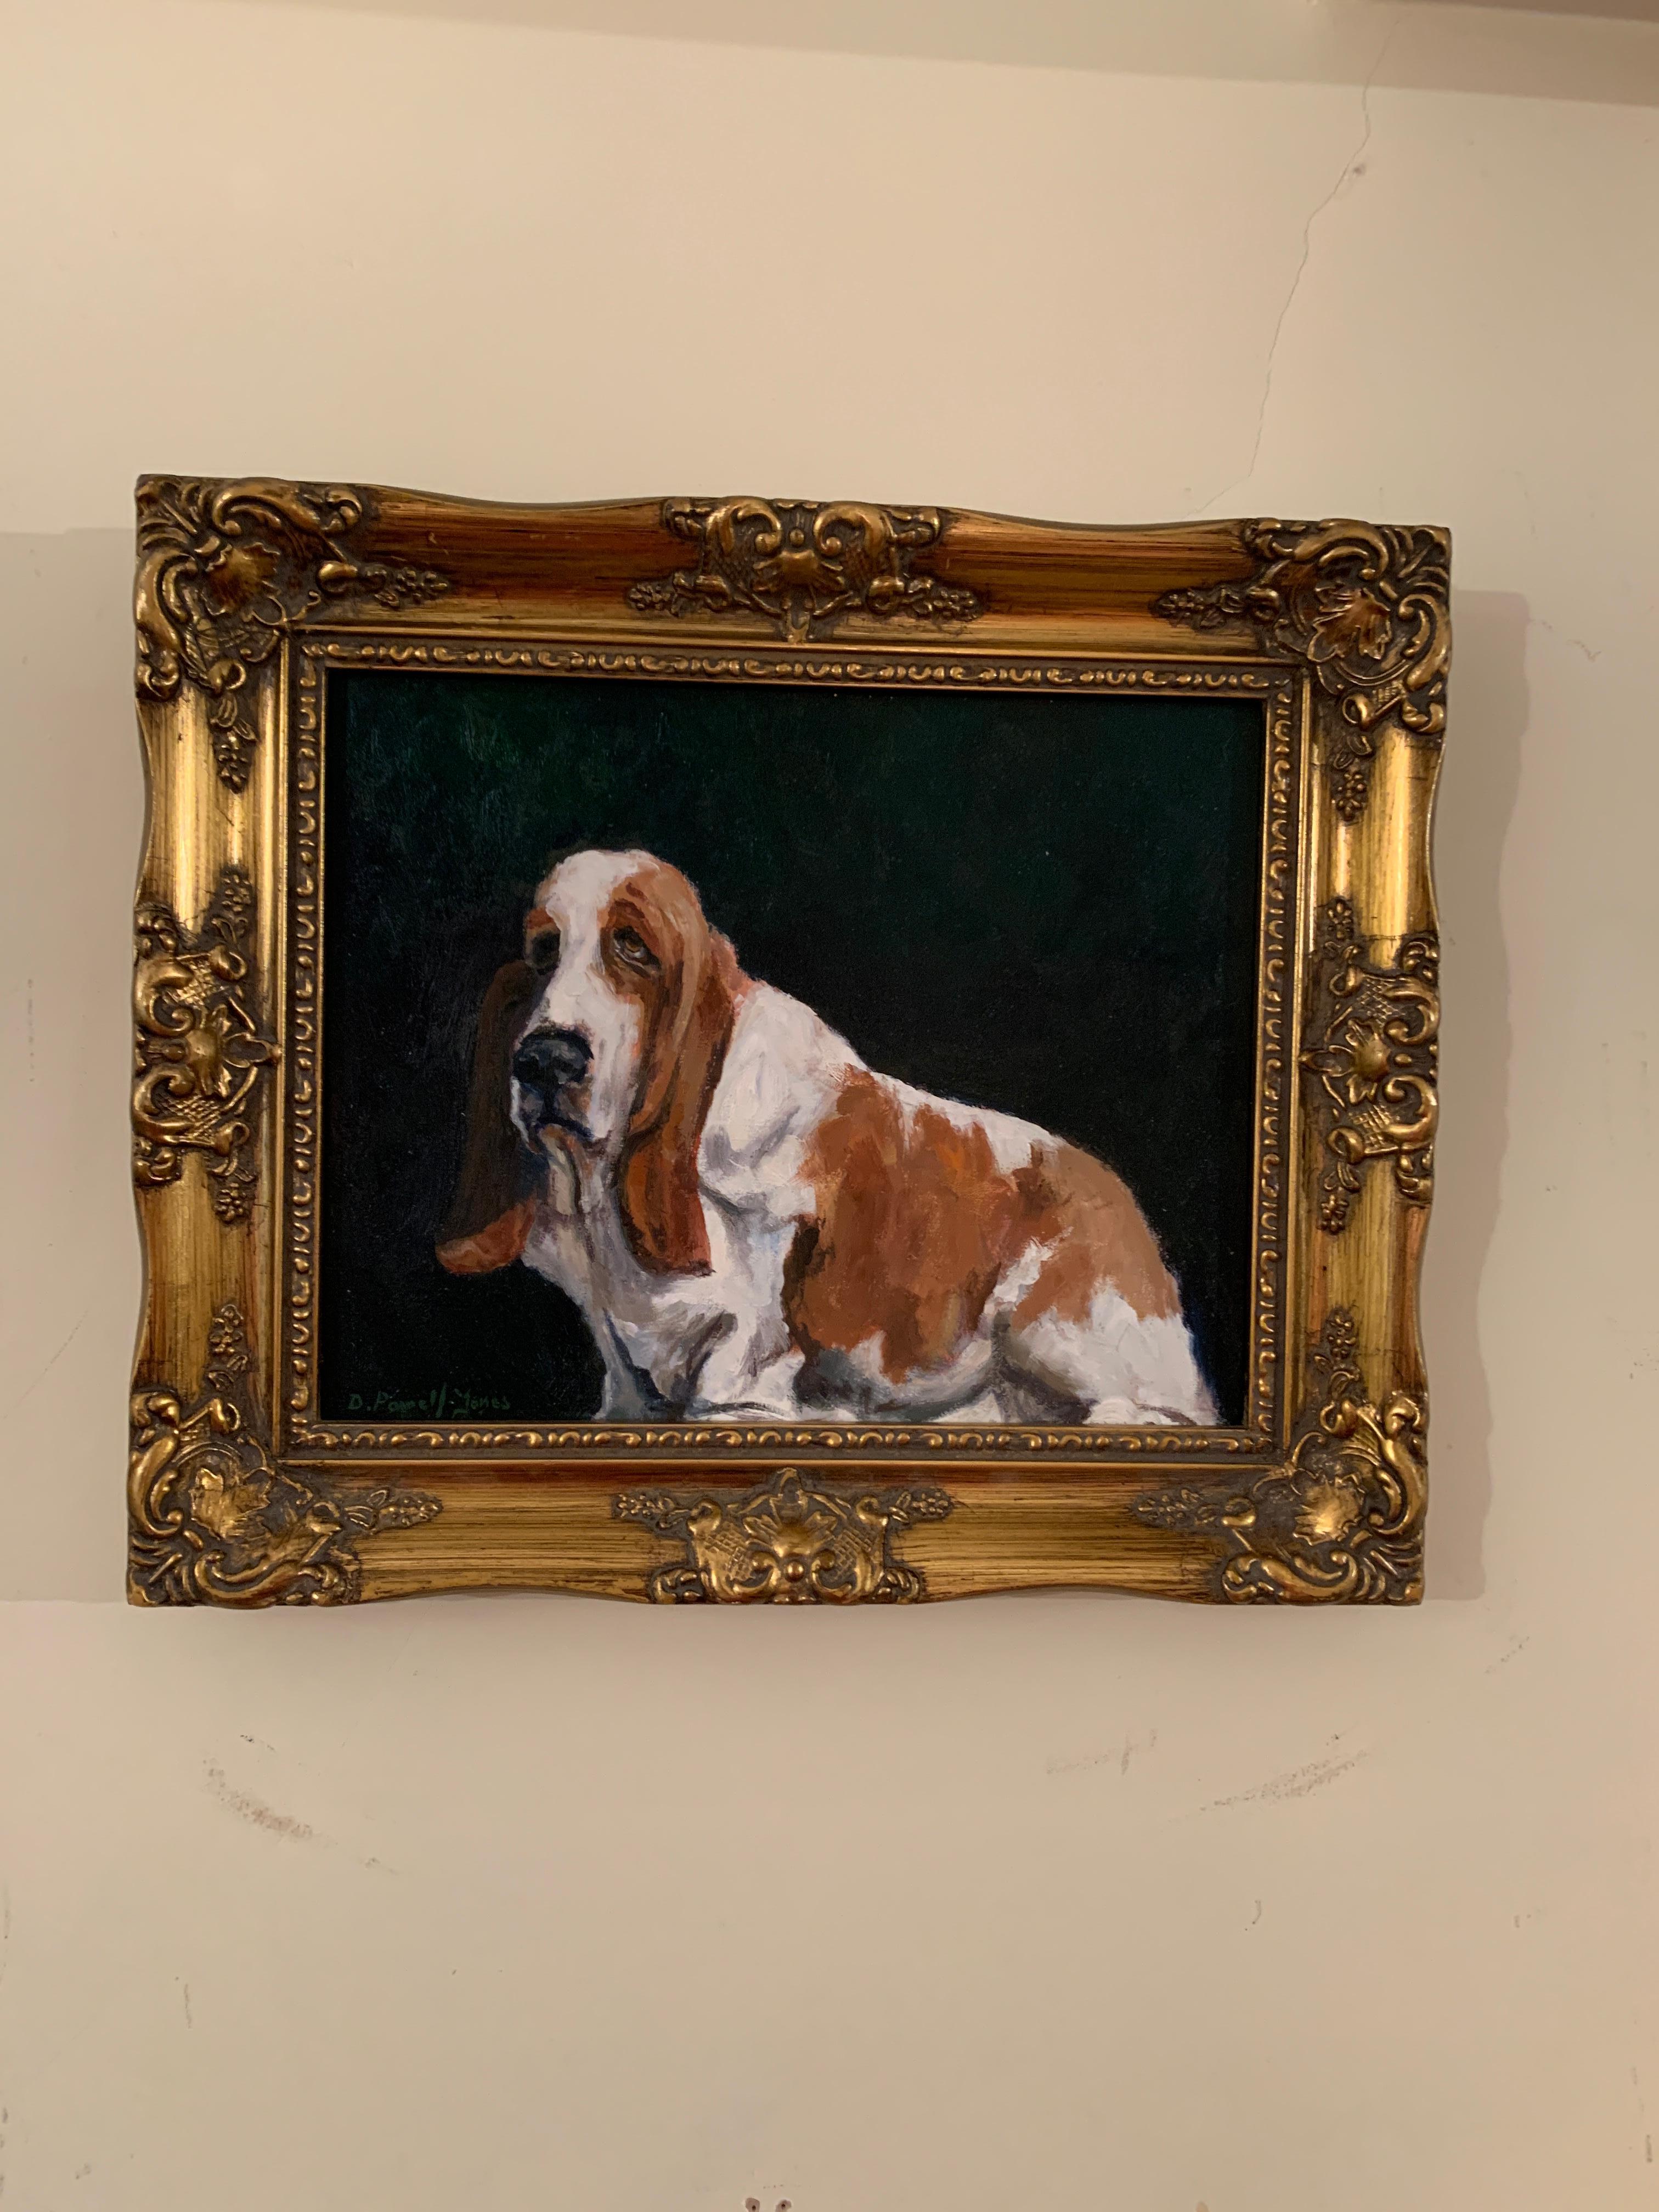 Derek Powell-Jones Figurative Painting – Ölgemälde eines englischen Bassett-Hundeporträts eines Hundes in einer Inneneinrichtung.